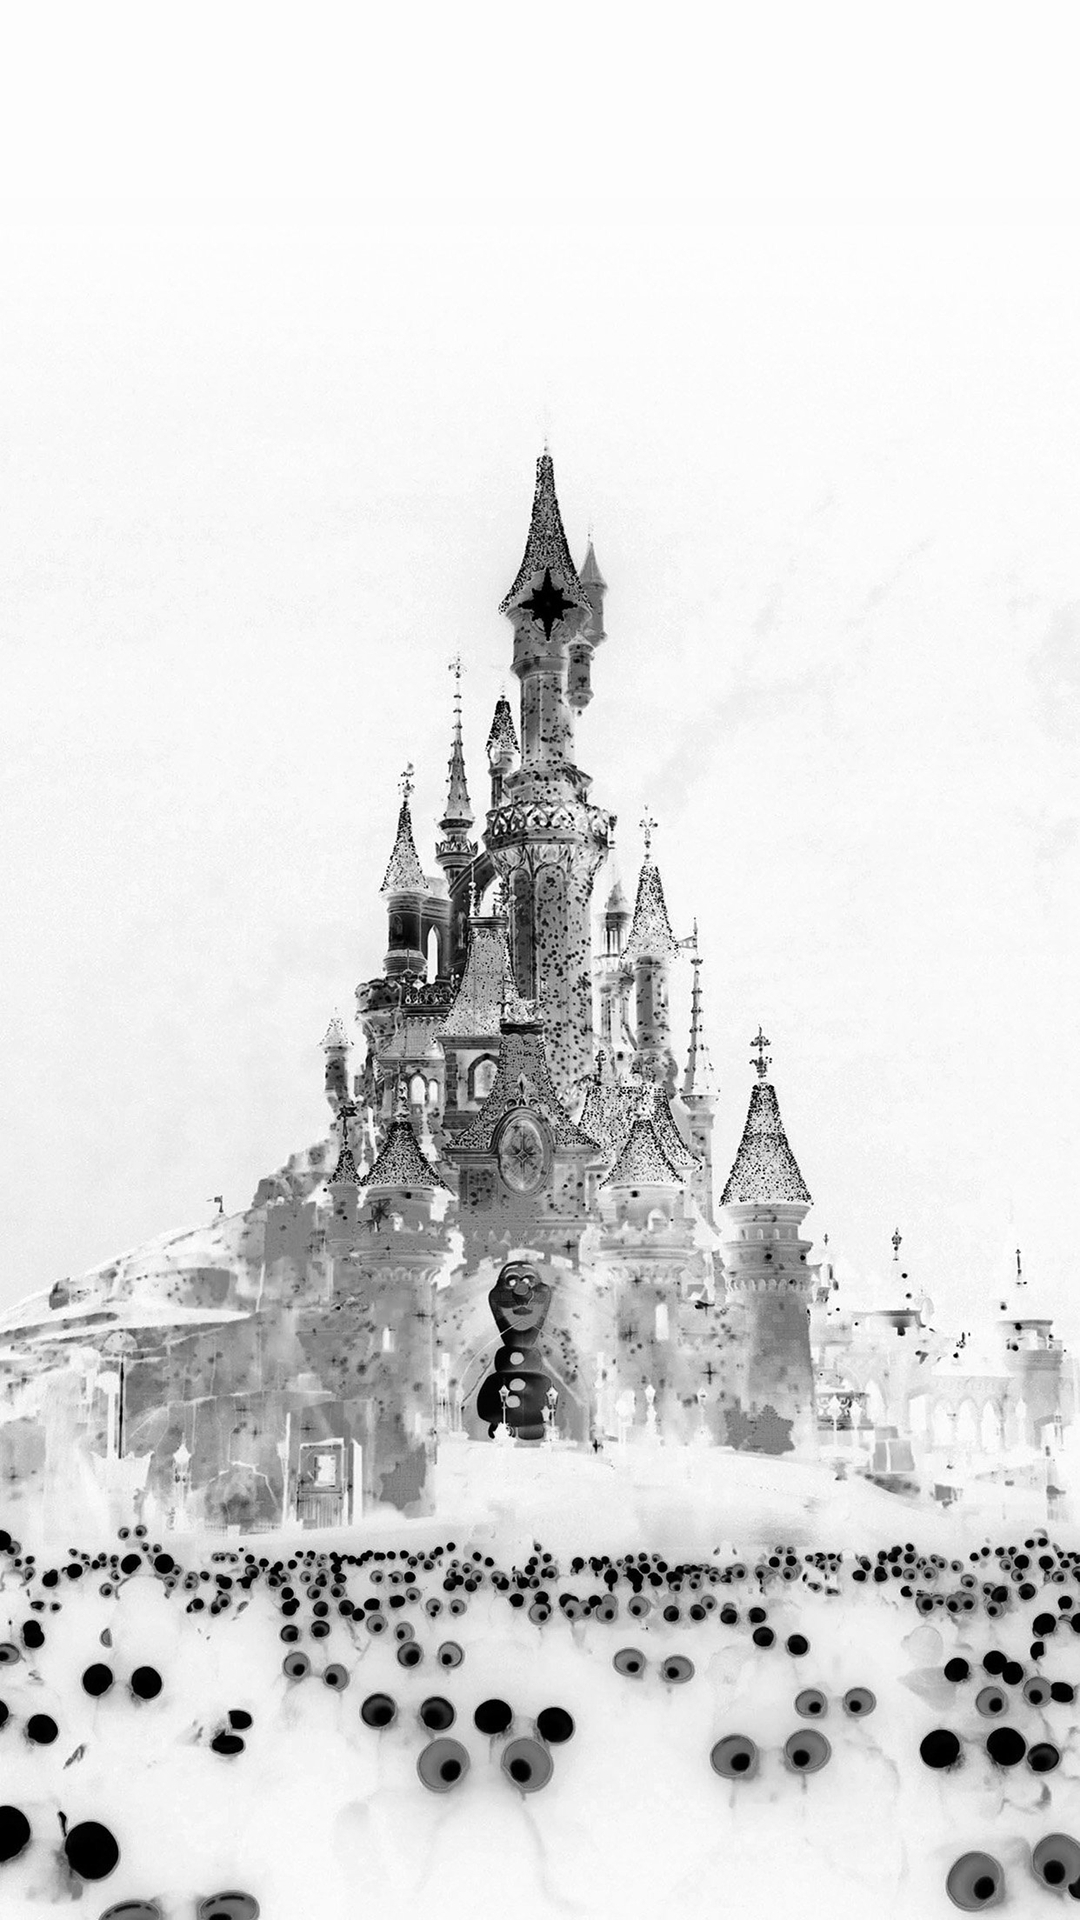 Disney Art Let It Go Snow Illust White iPhone 6s Plus